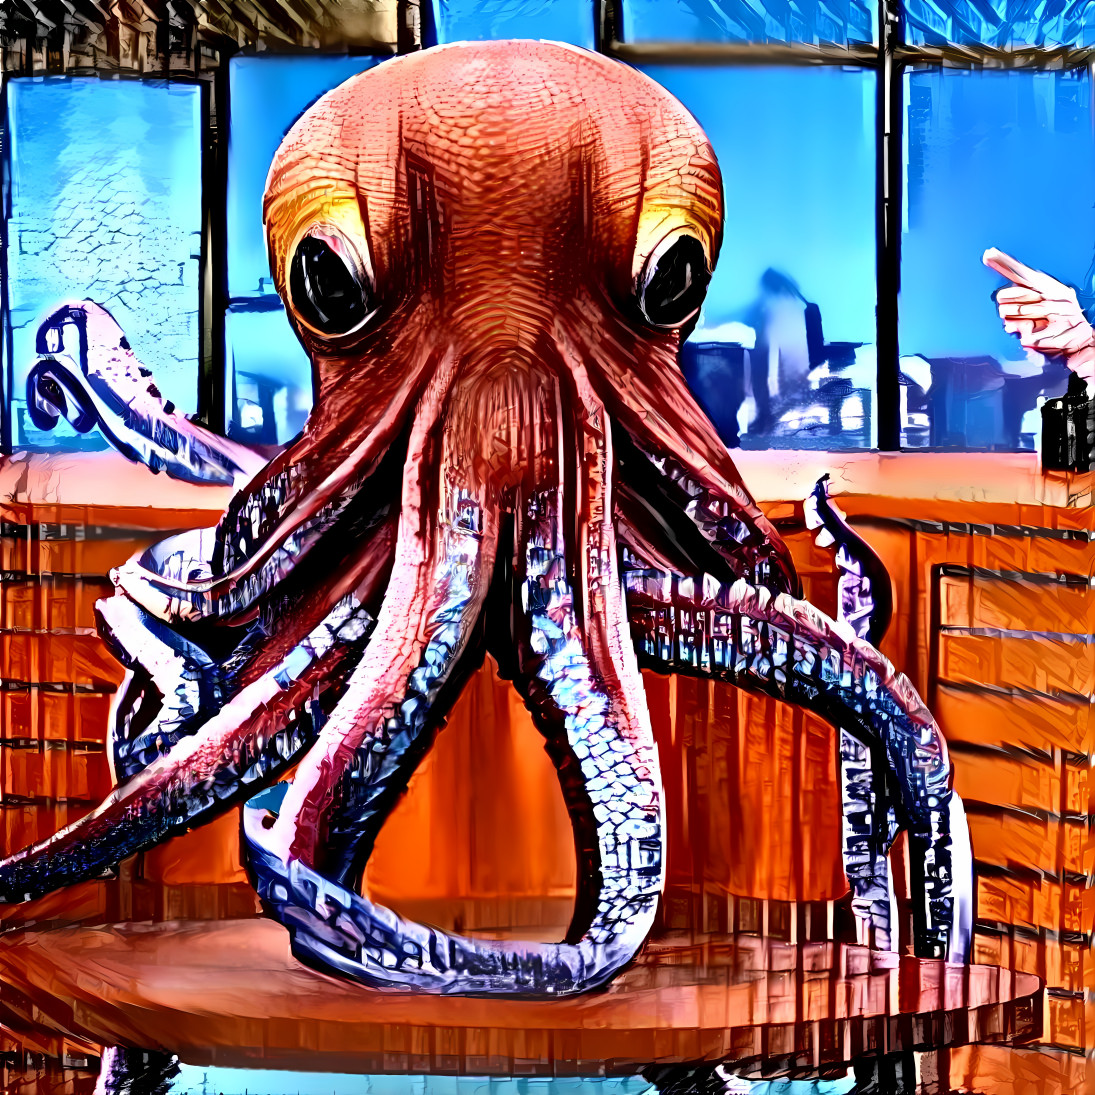 urban octopus appears on Kimmel